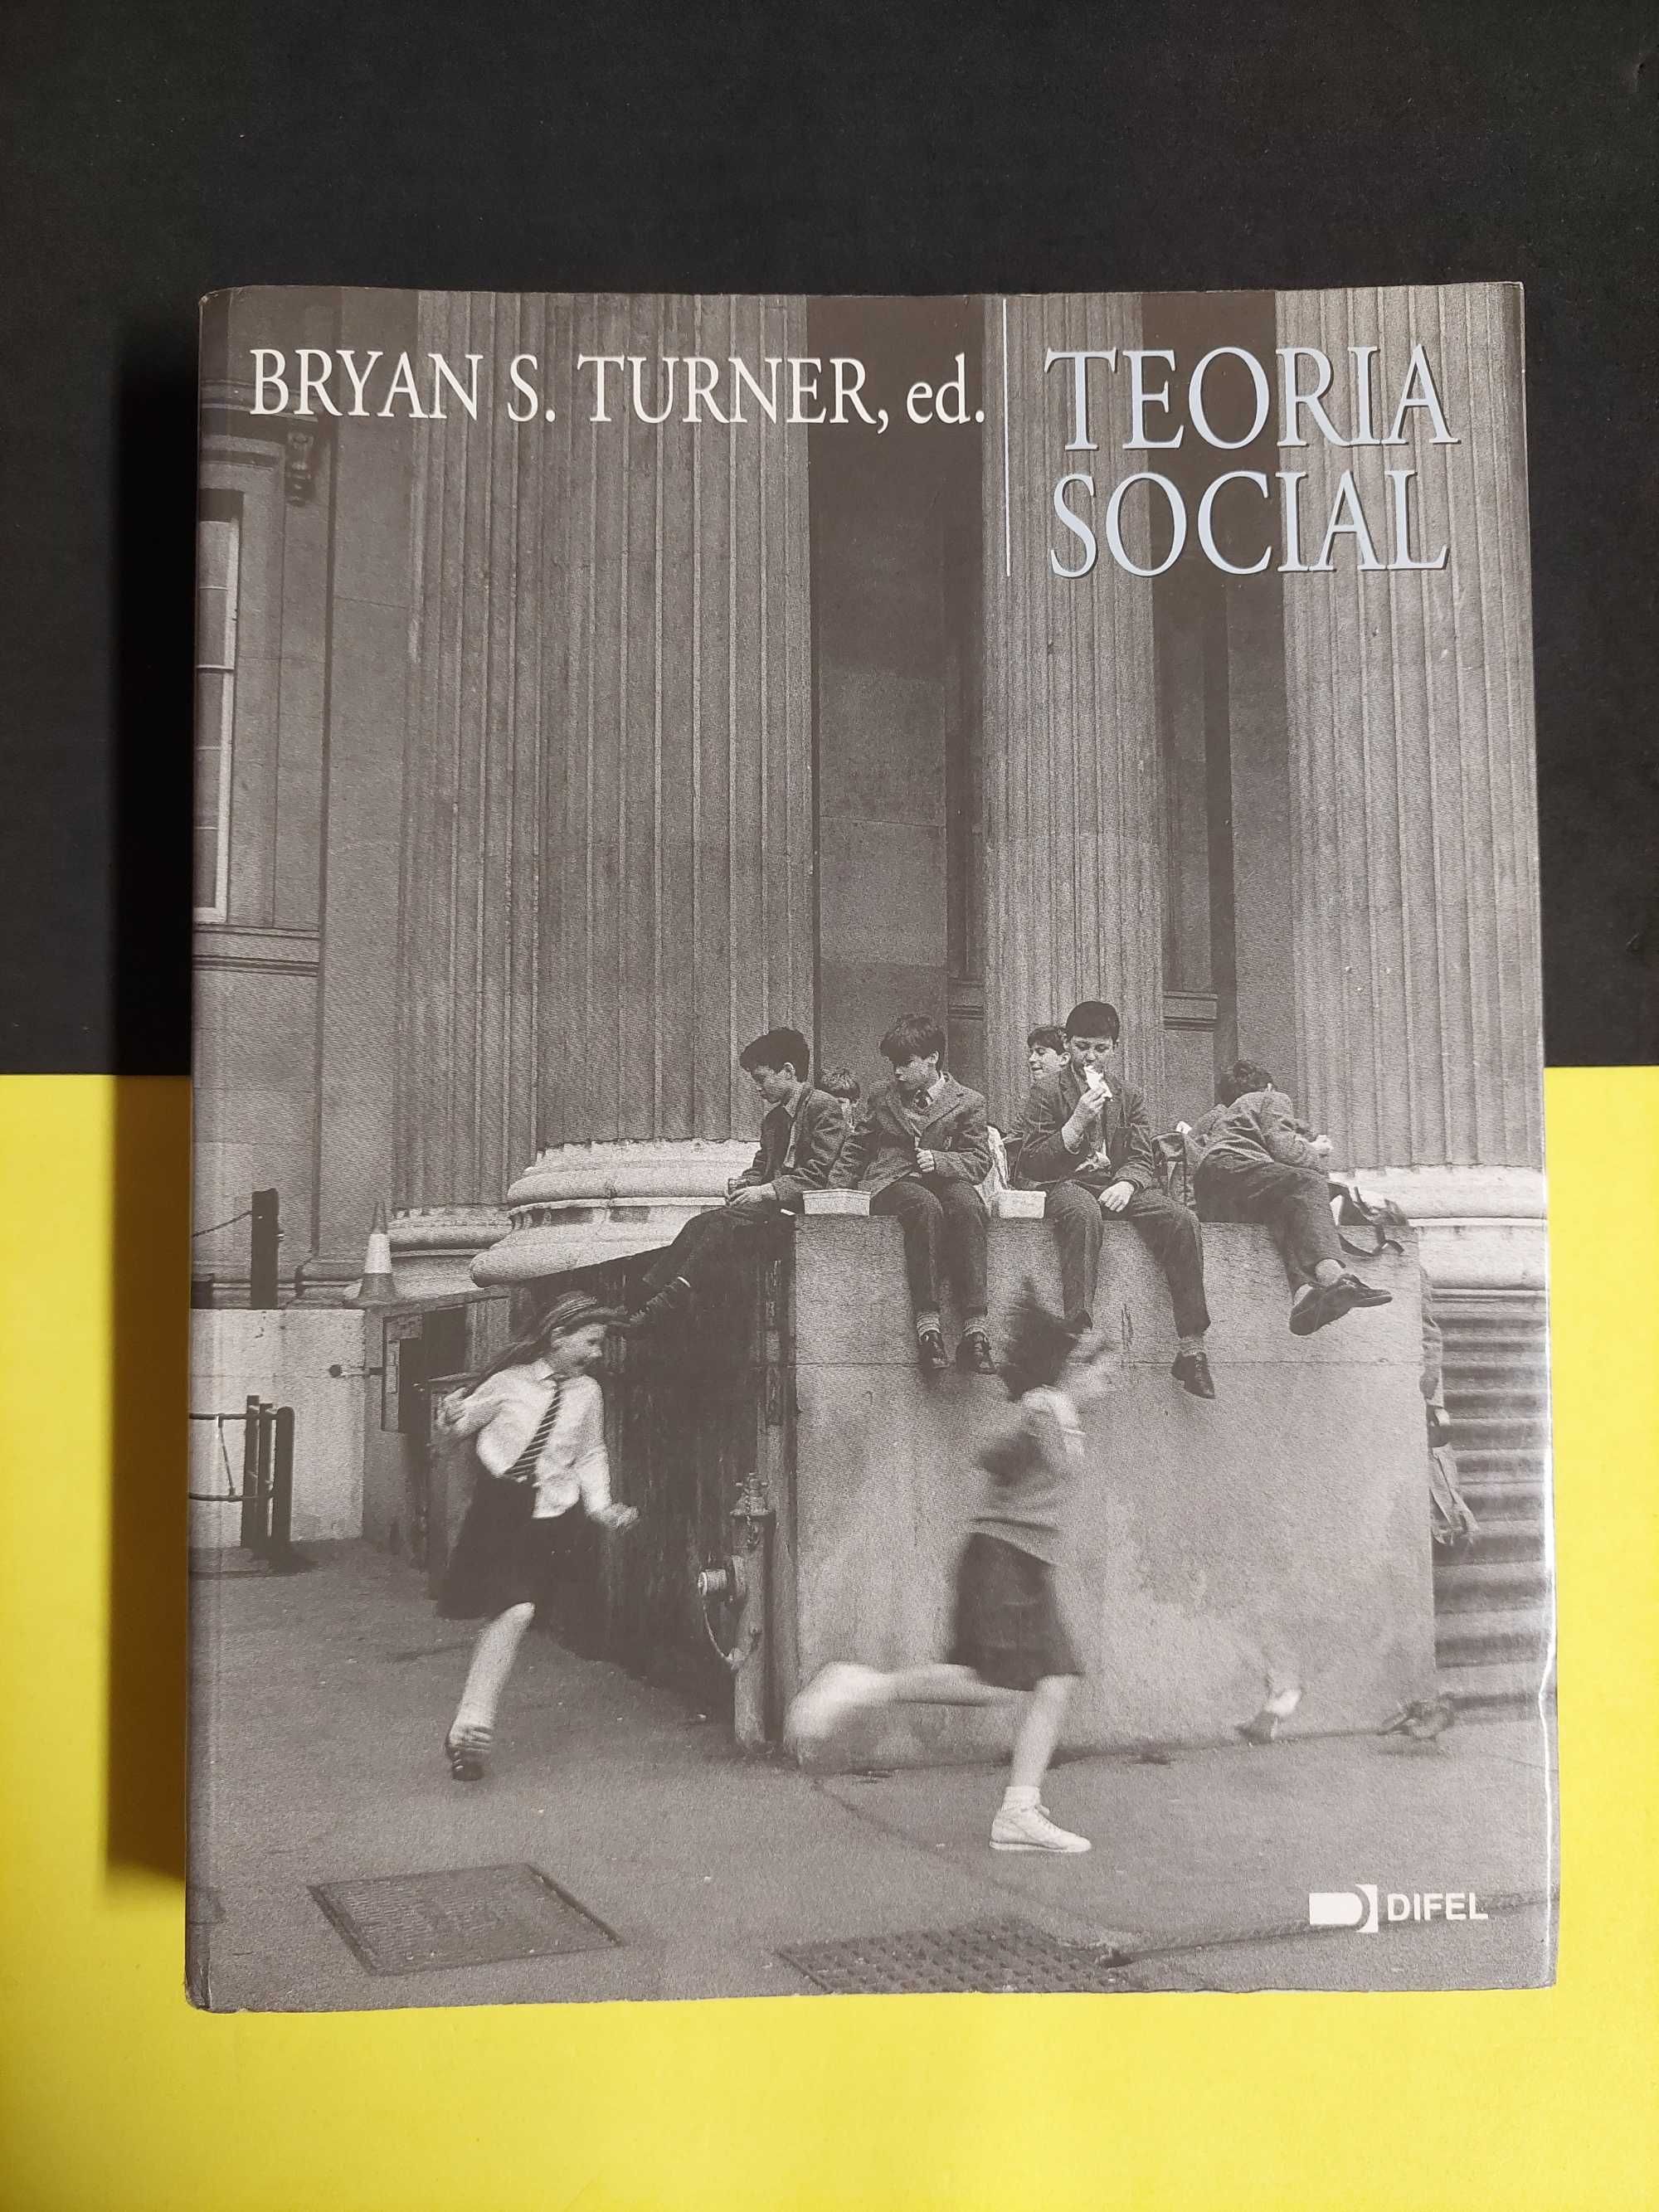 Bryan S. Turner - Teoria social